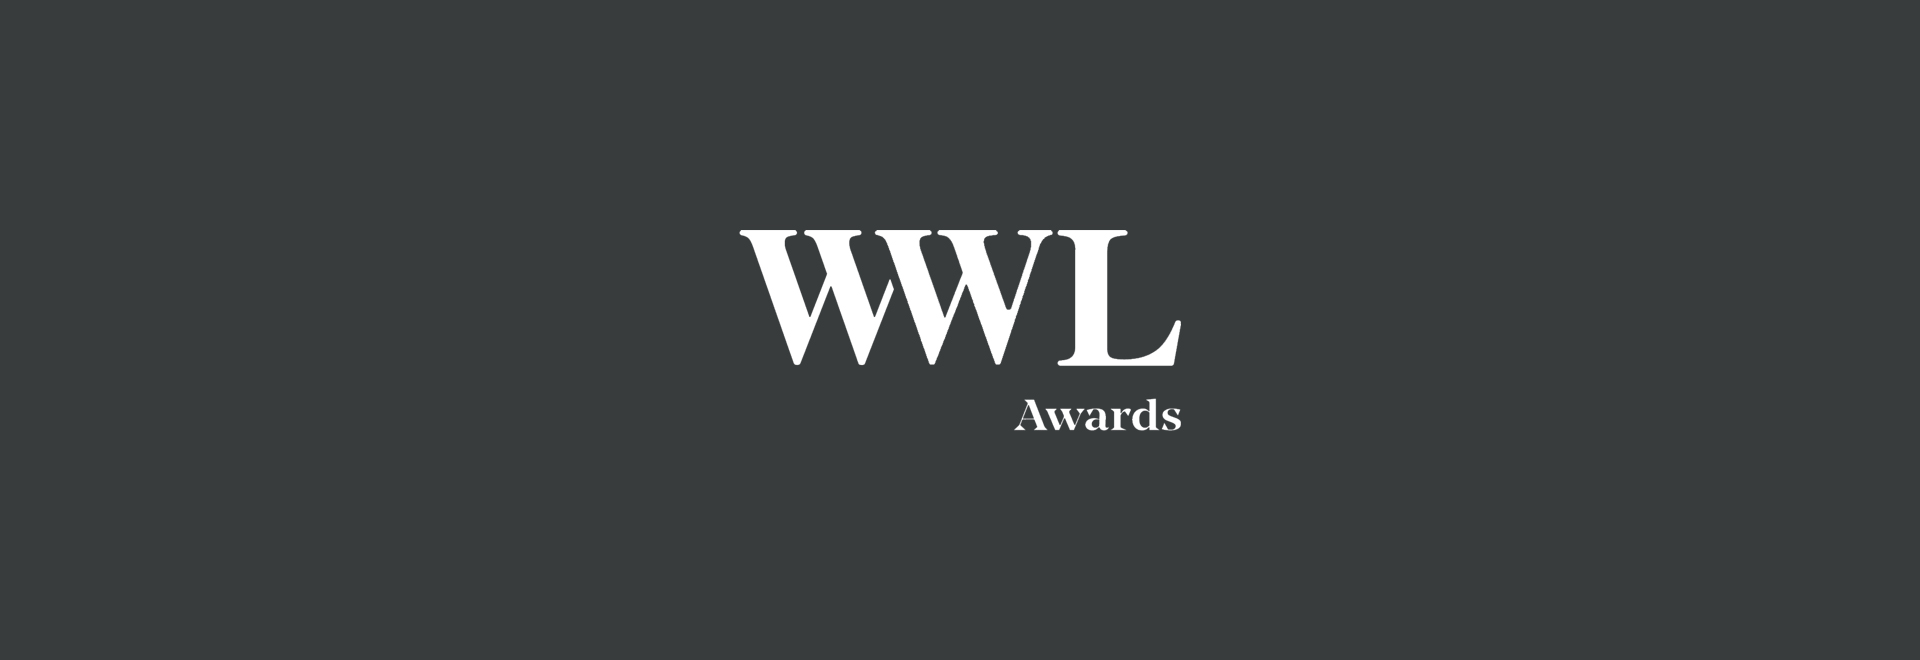 WWL Awards logo